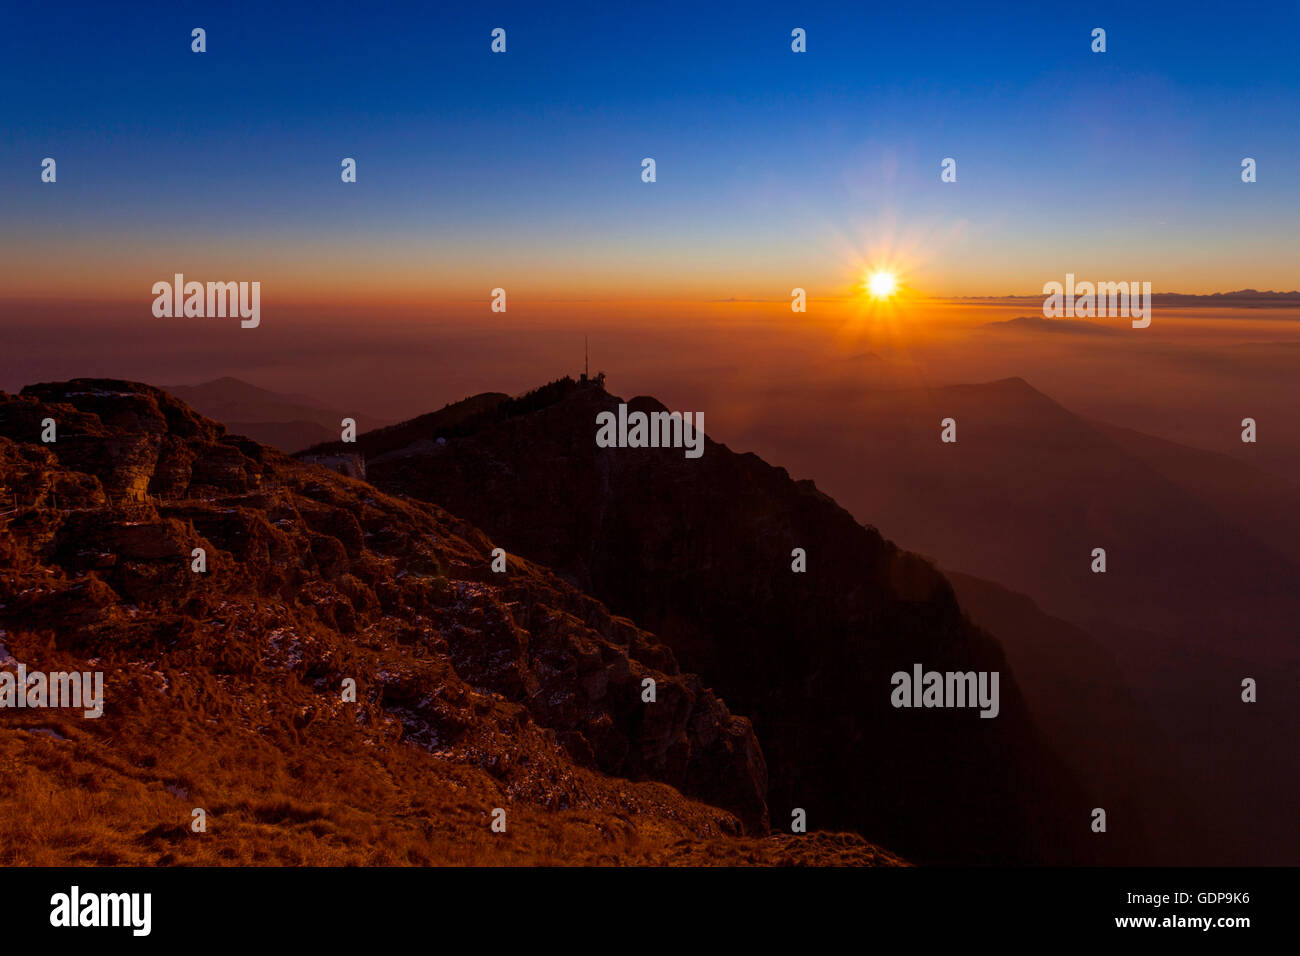 Erhöhte Silhouette Landschaft mit Tal Nebel am Sonnenuntergang, Monte Generoso, Tessin, Schweiz Stockfoto